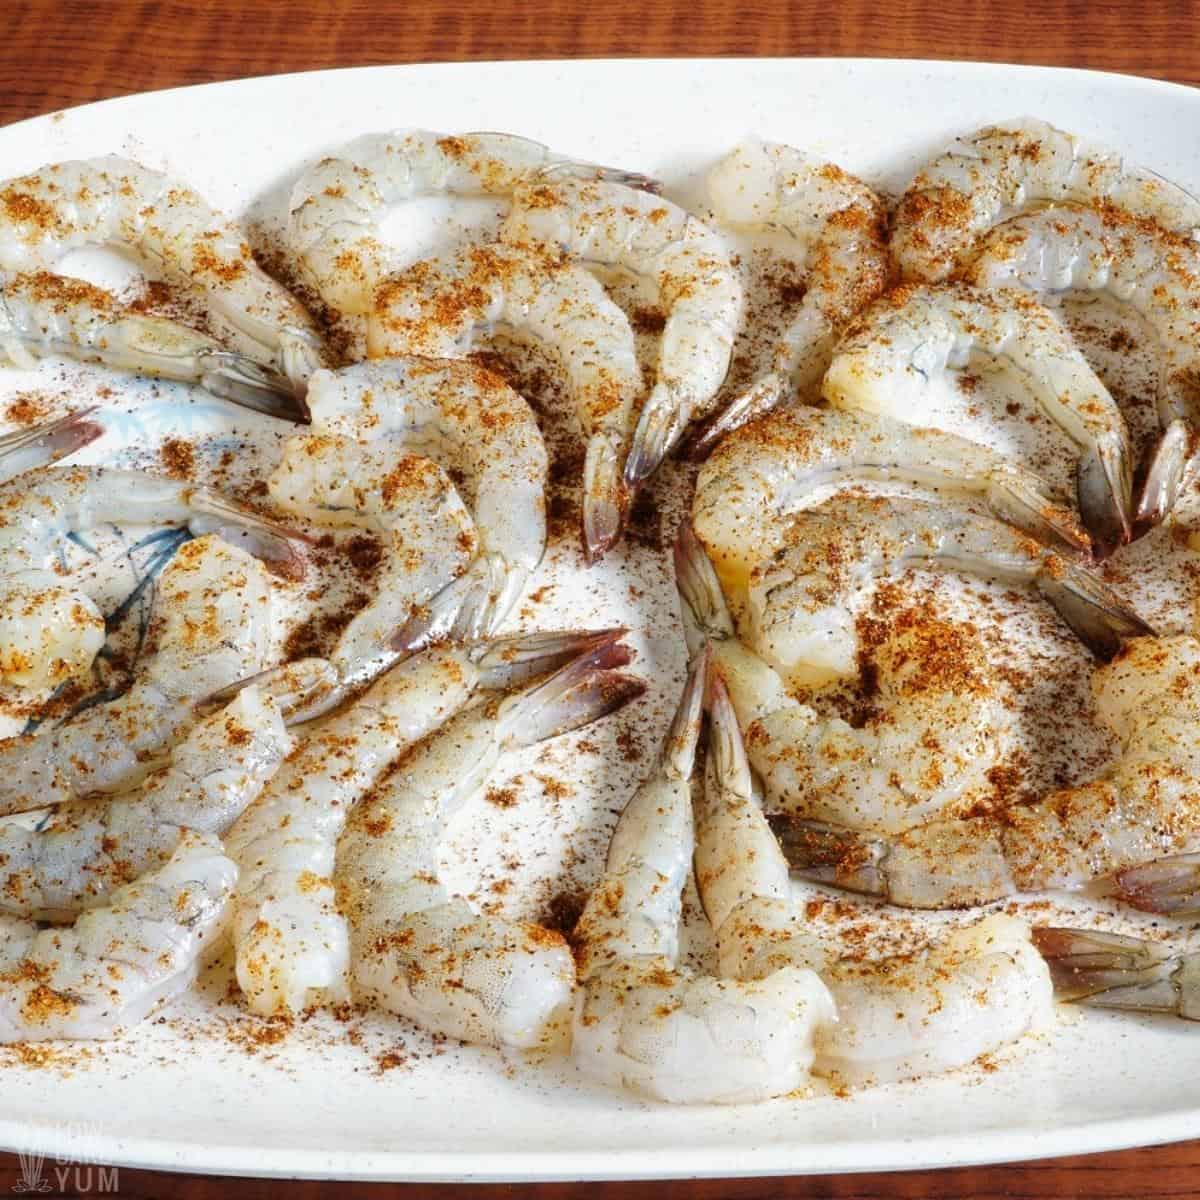 seasoned shrimp for fajitas on white platter.